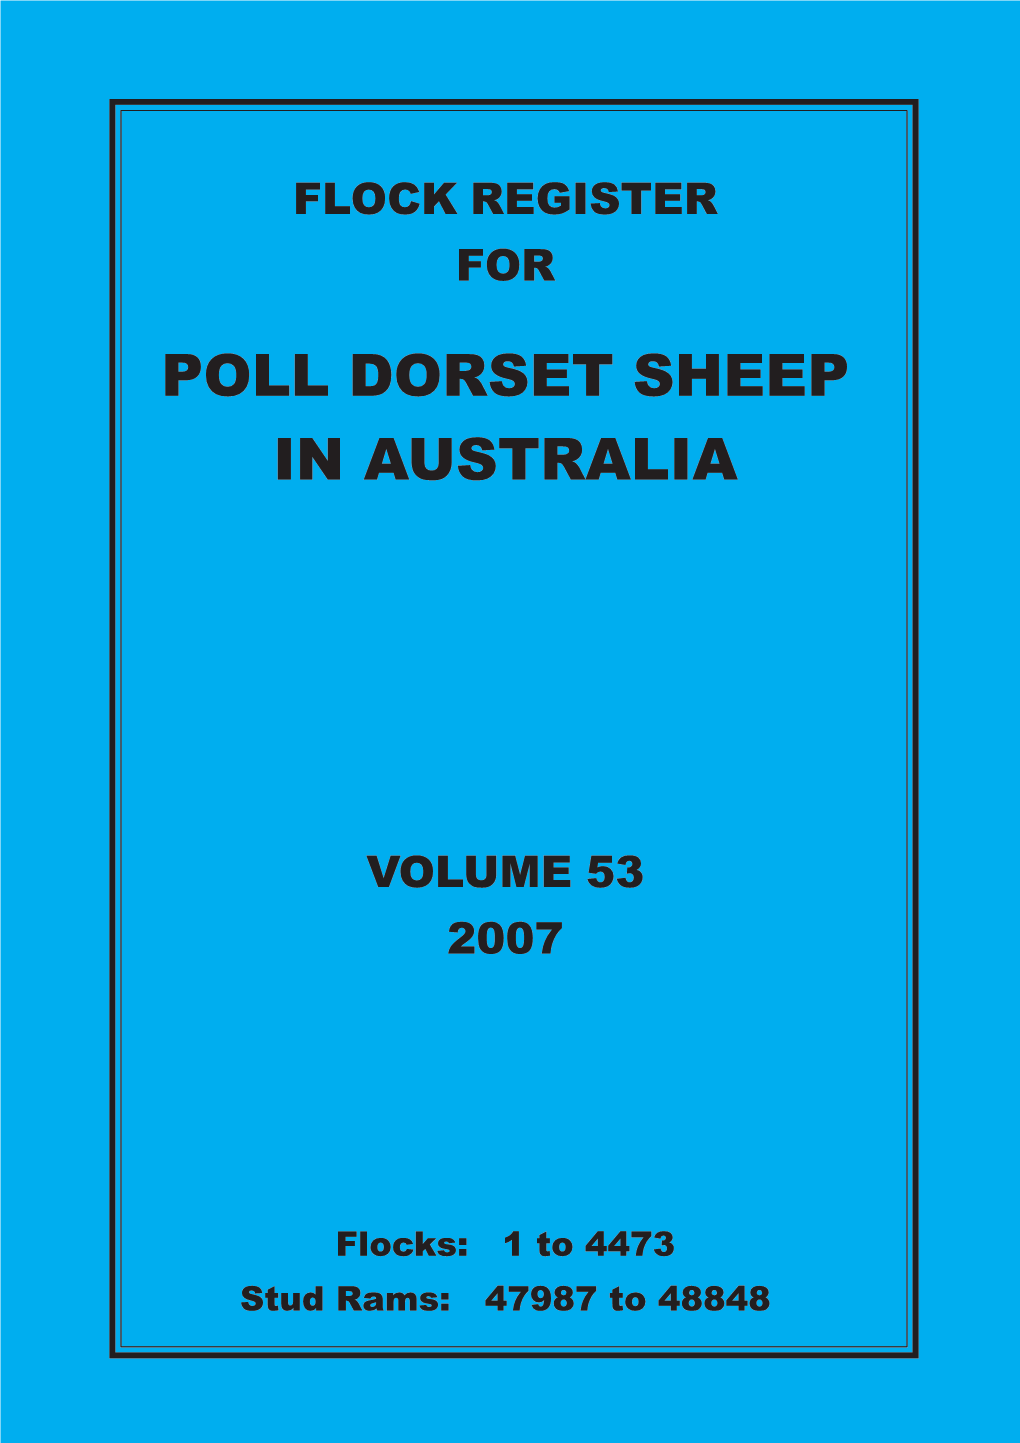 2007 Flock Register Vol 53